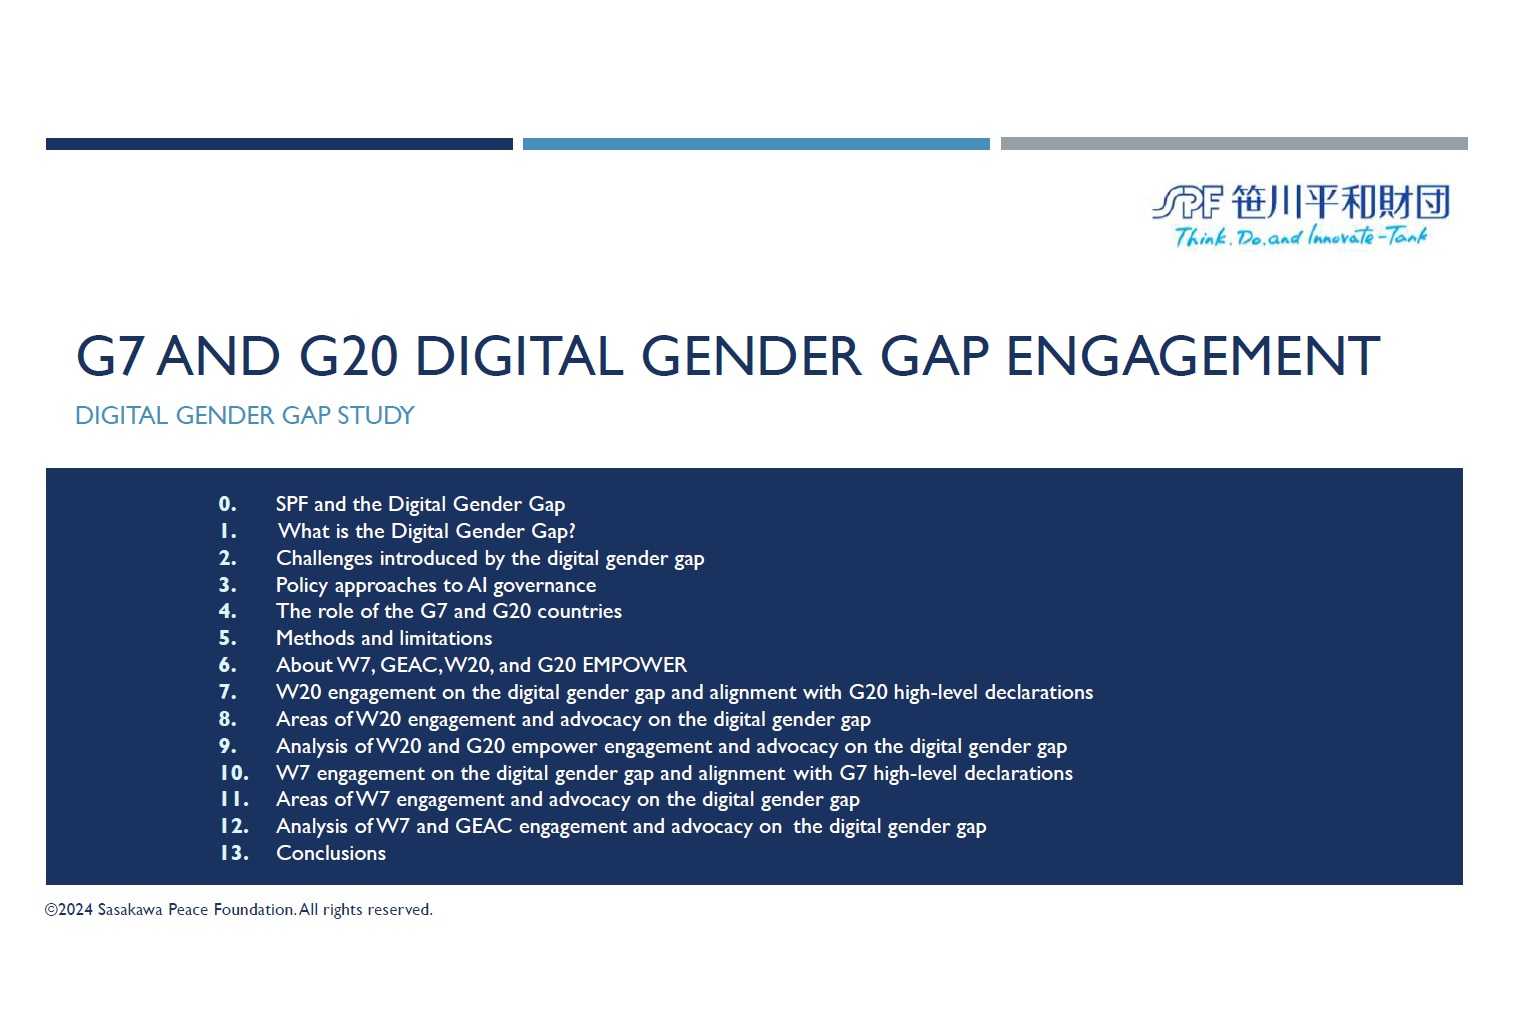 G7 and G20 Digital Gender Gap Engagement